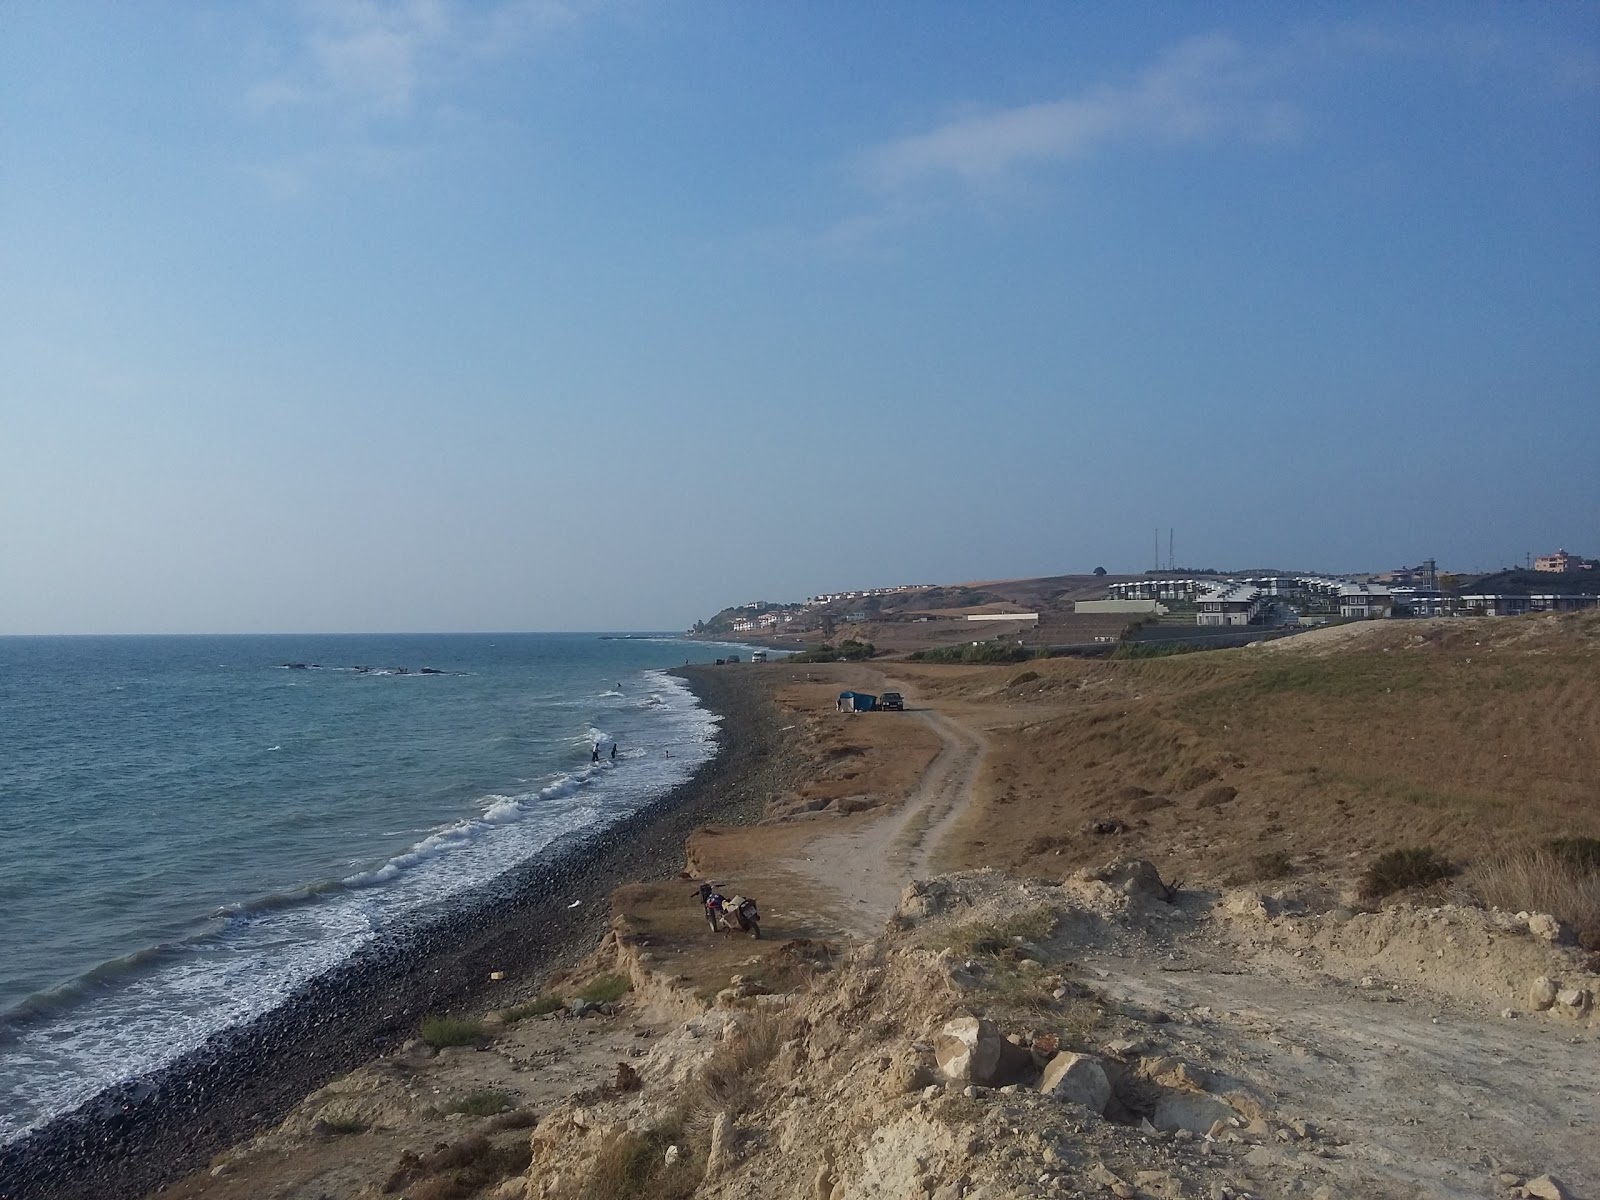 Foto von Deniz beach mit grauer kies Oberfläche